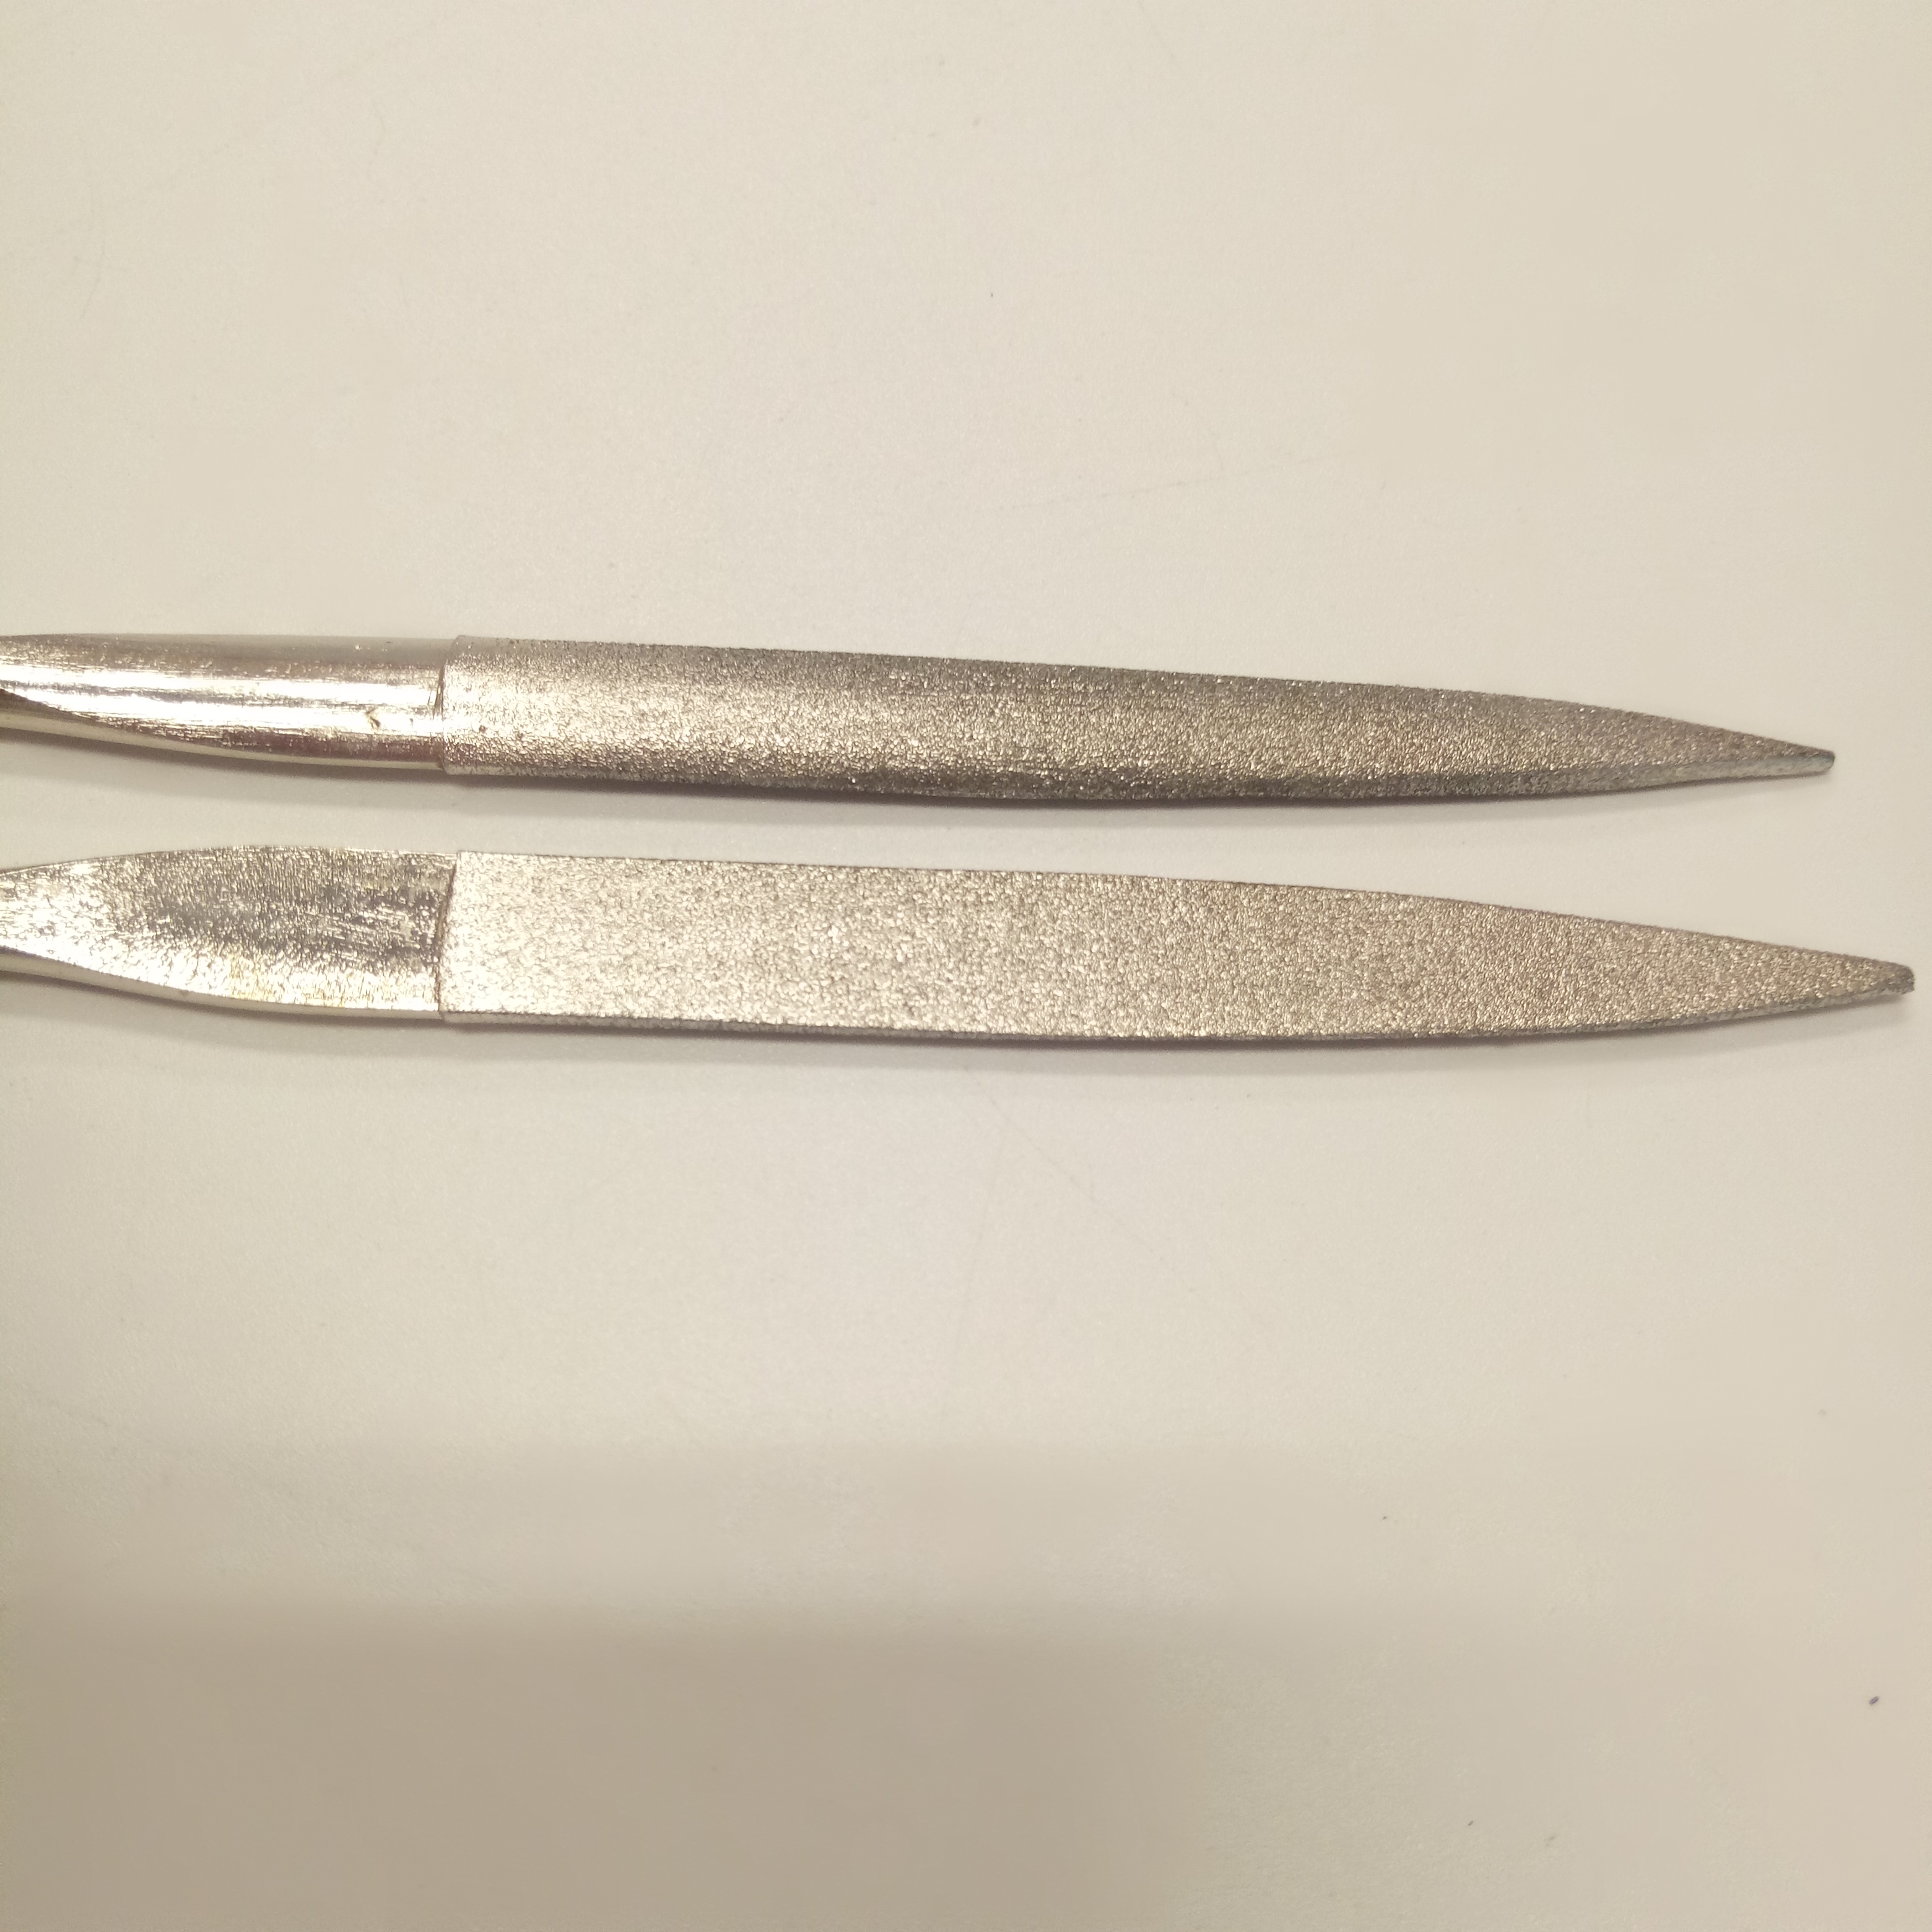 Herramientas de lima de mano de diamante Lima de aguja semicircular de diamante electrochapado de 140 mm para trabajo de madera y metal